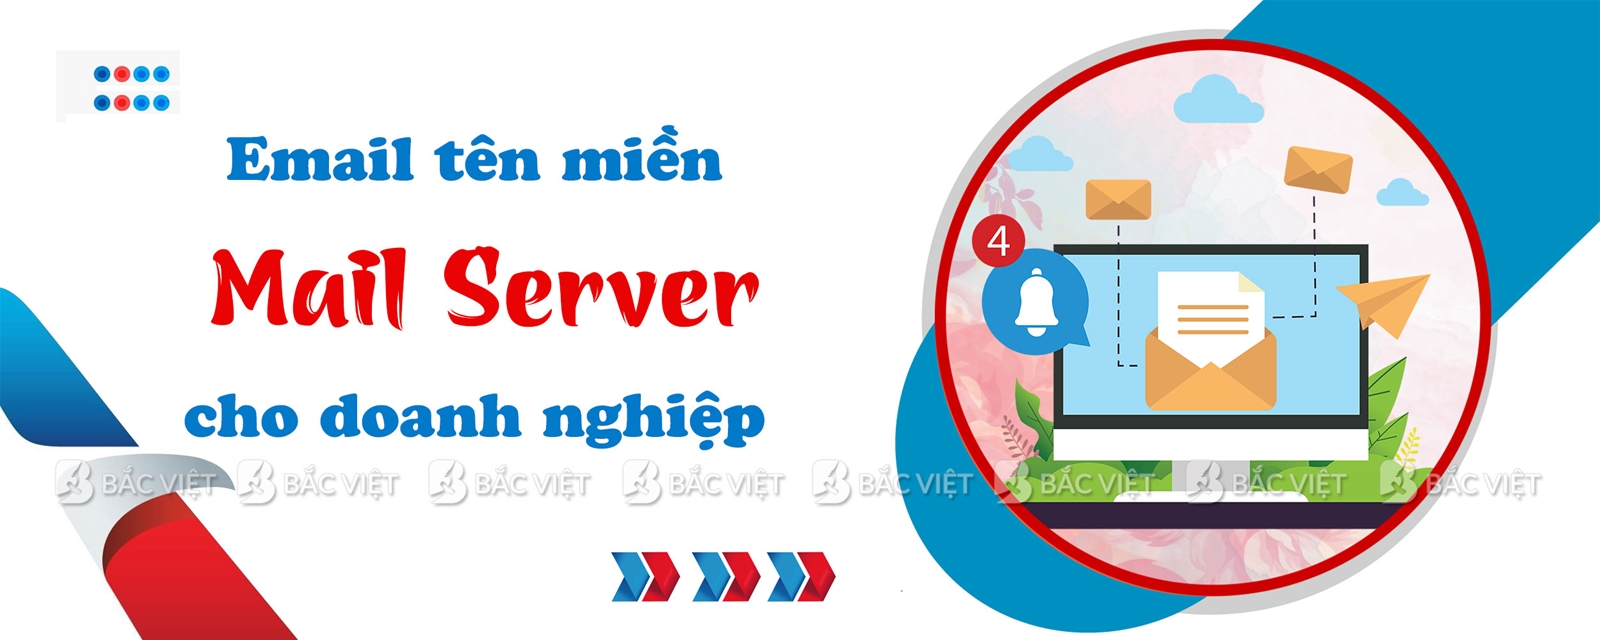 Mail Server là gì? Giải pháp email tên miền riêng cho doanh nghiệp